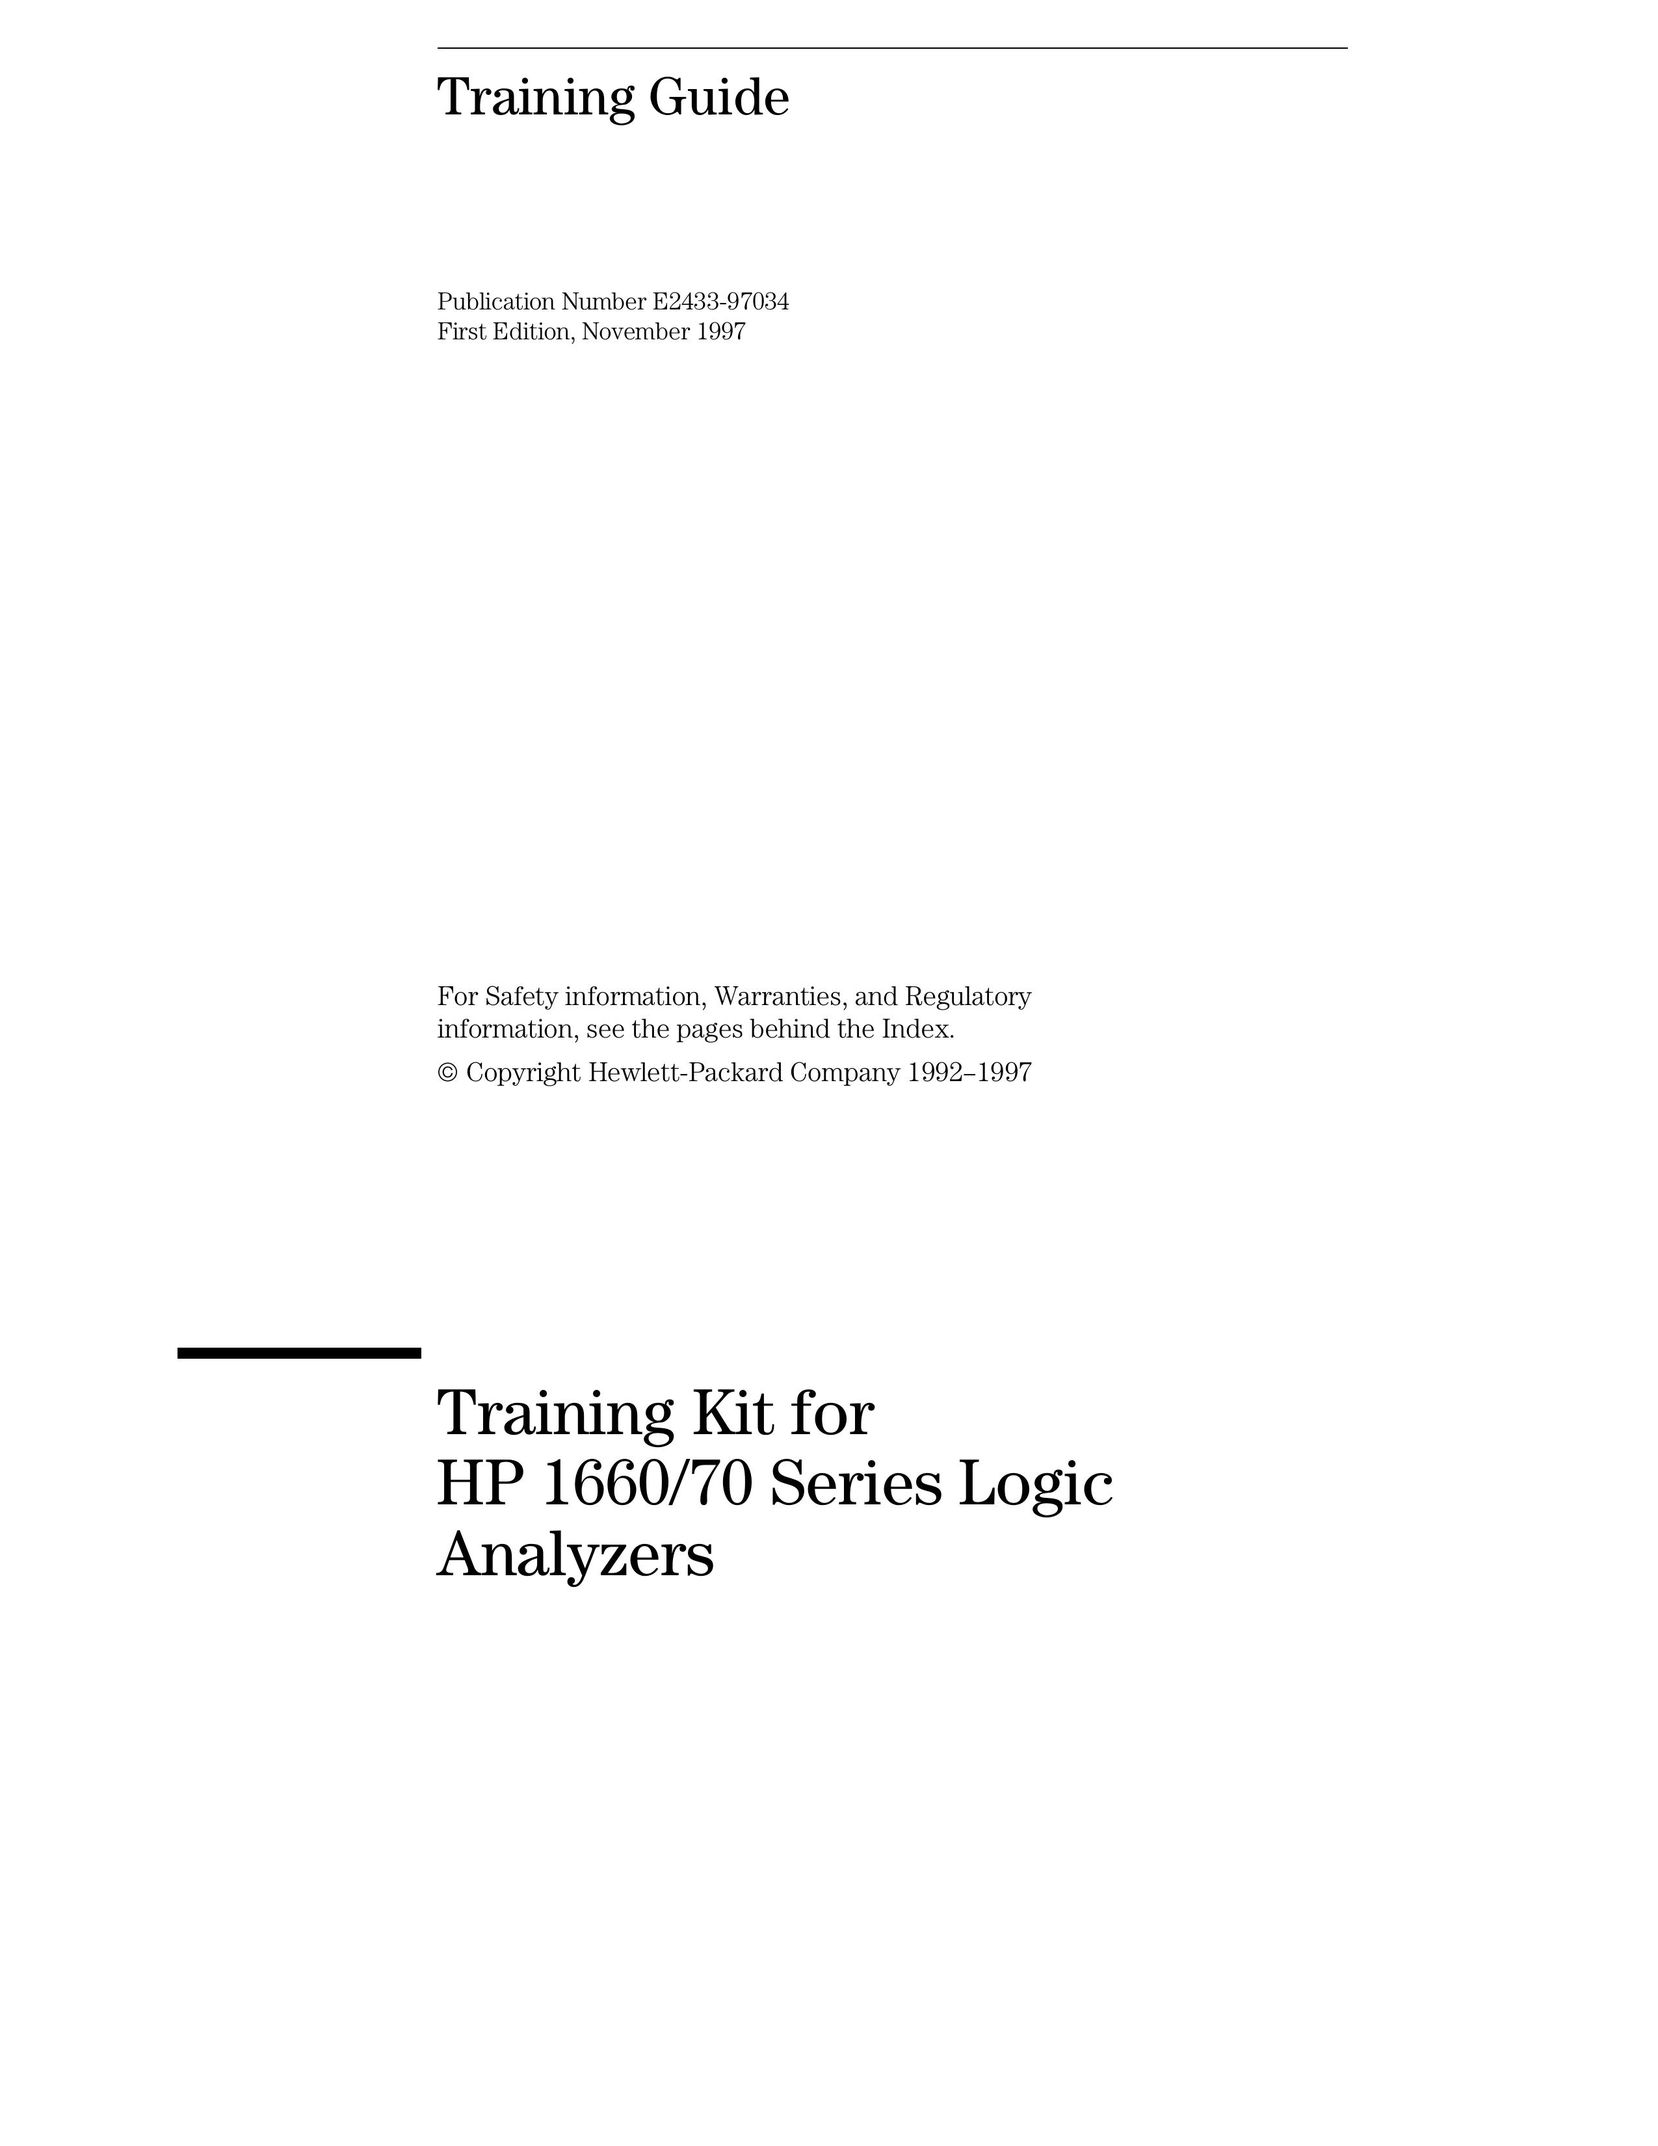 HP (Hewlett-Packard) 70 TV Converter Box User Manual